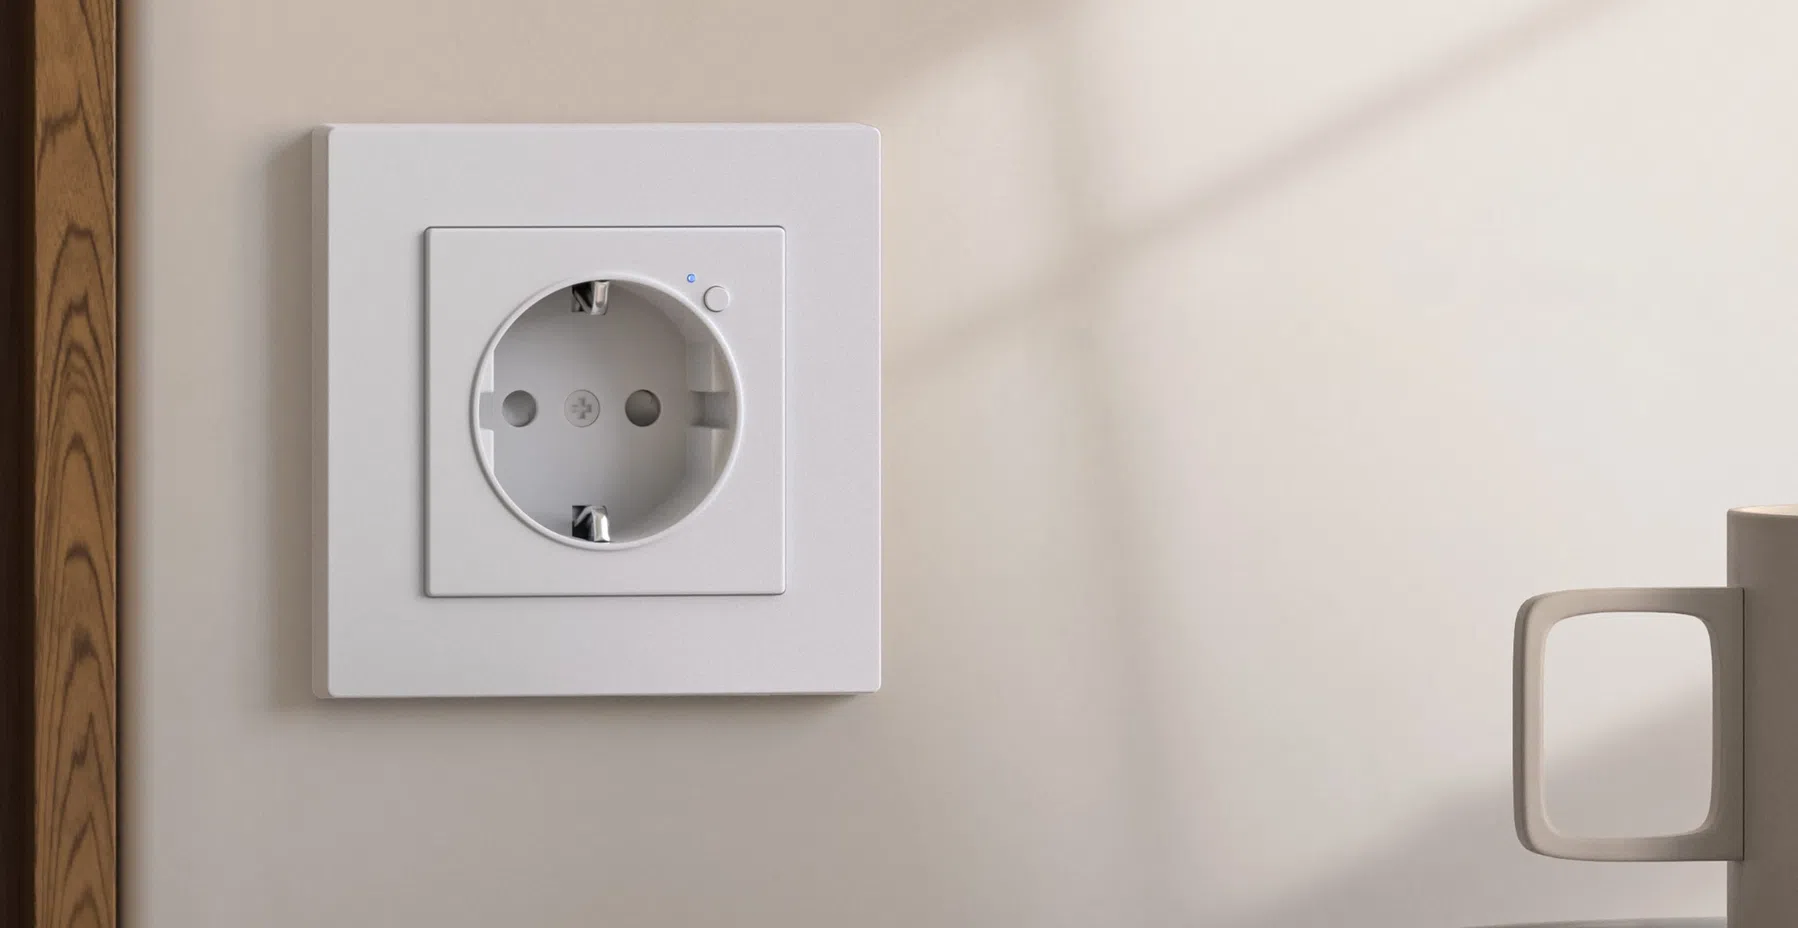 Dit slimme stopcontact schakelt op basis van wattage en past gewoon in de muur